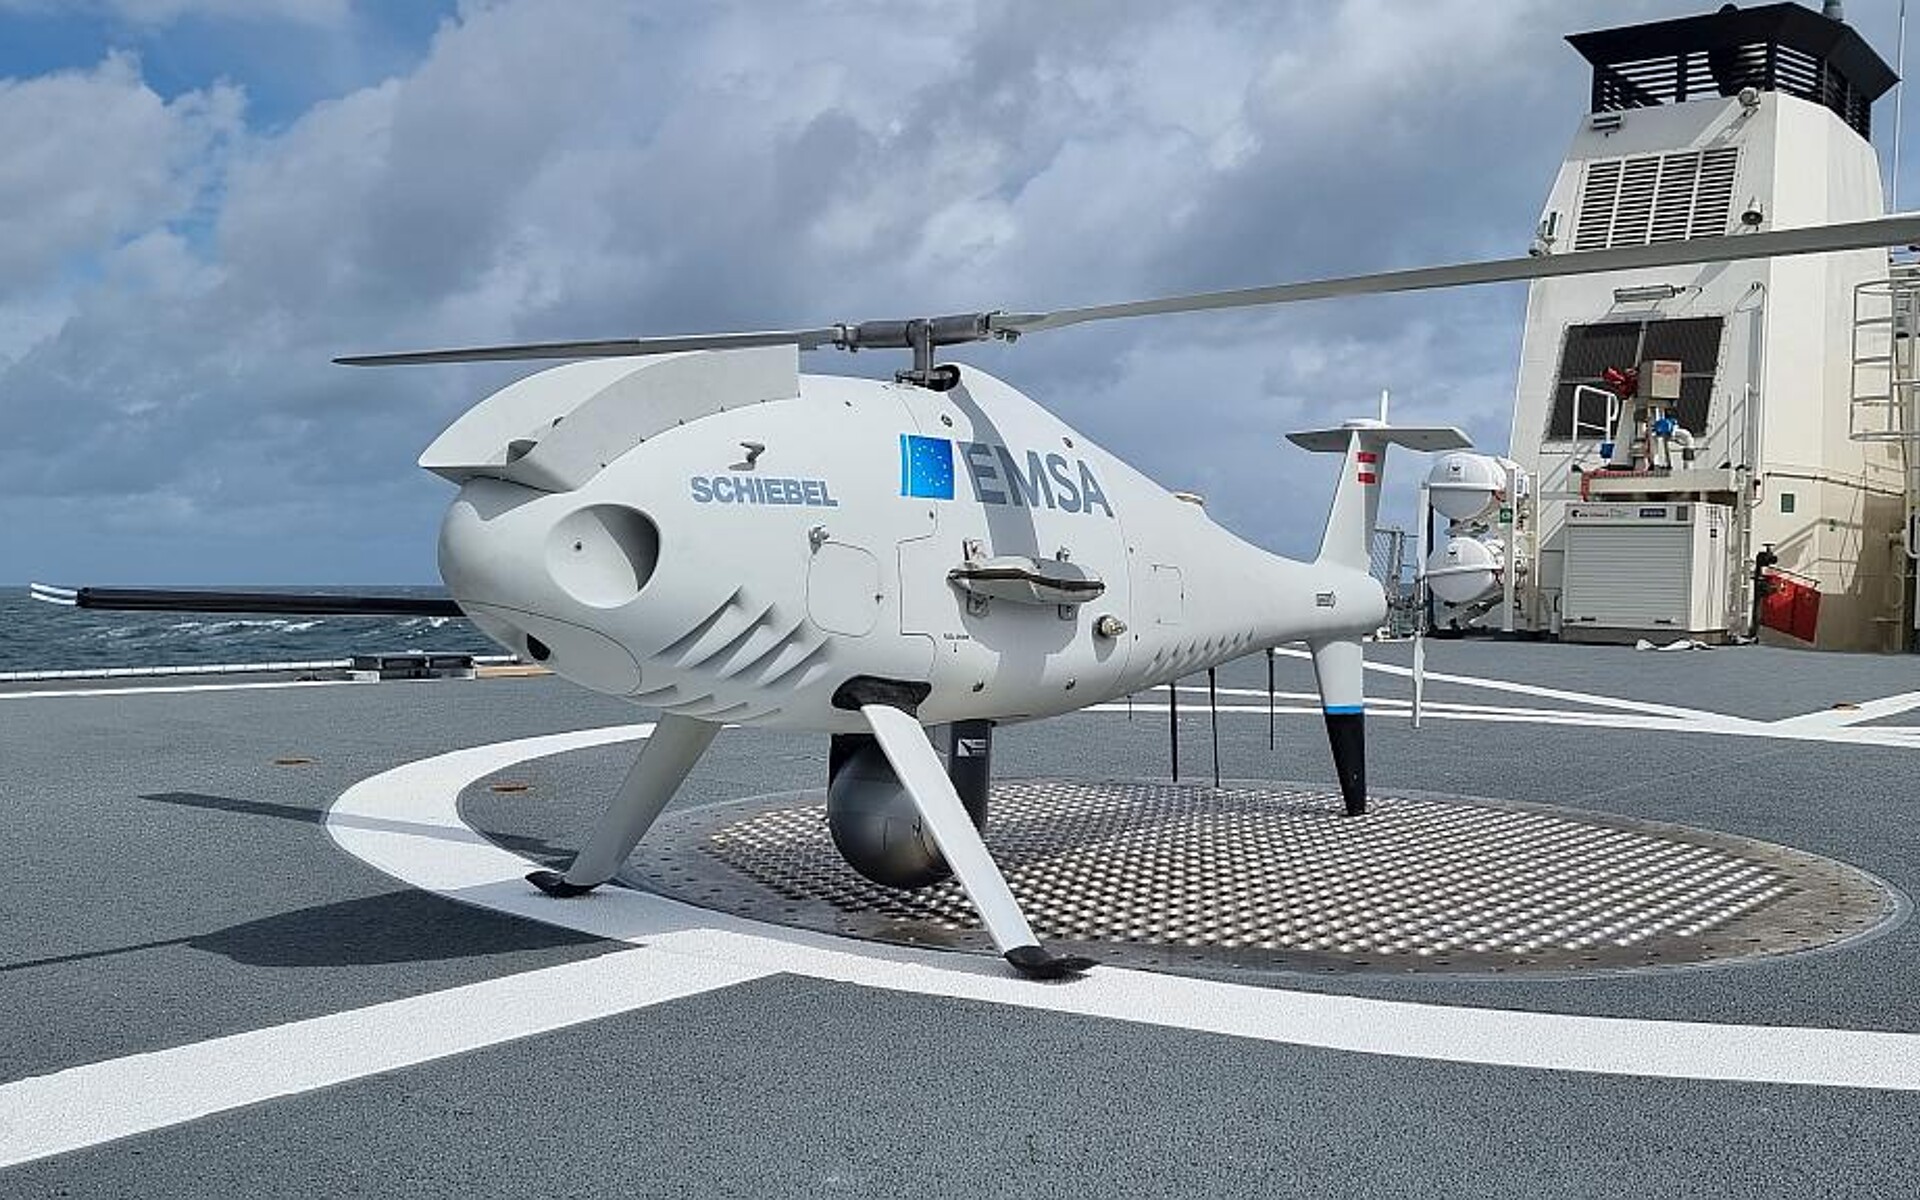 Materialien von Syensqo kommen beim unbemannten Flugsystem Camcopter S-100 von Schiebel zum Einsatz. (Foto: Syensqo)